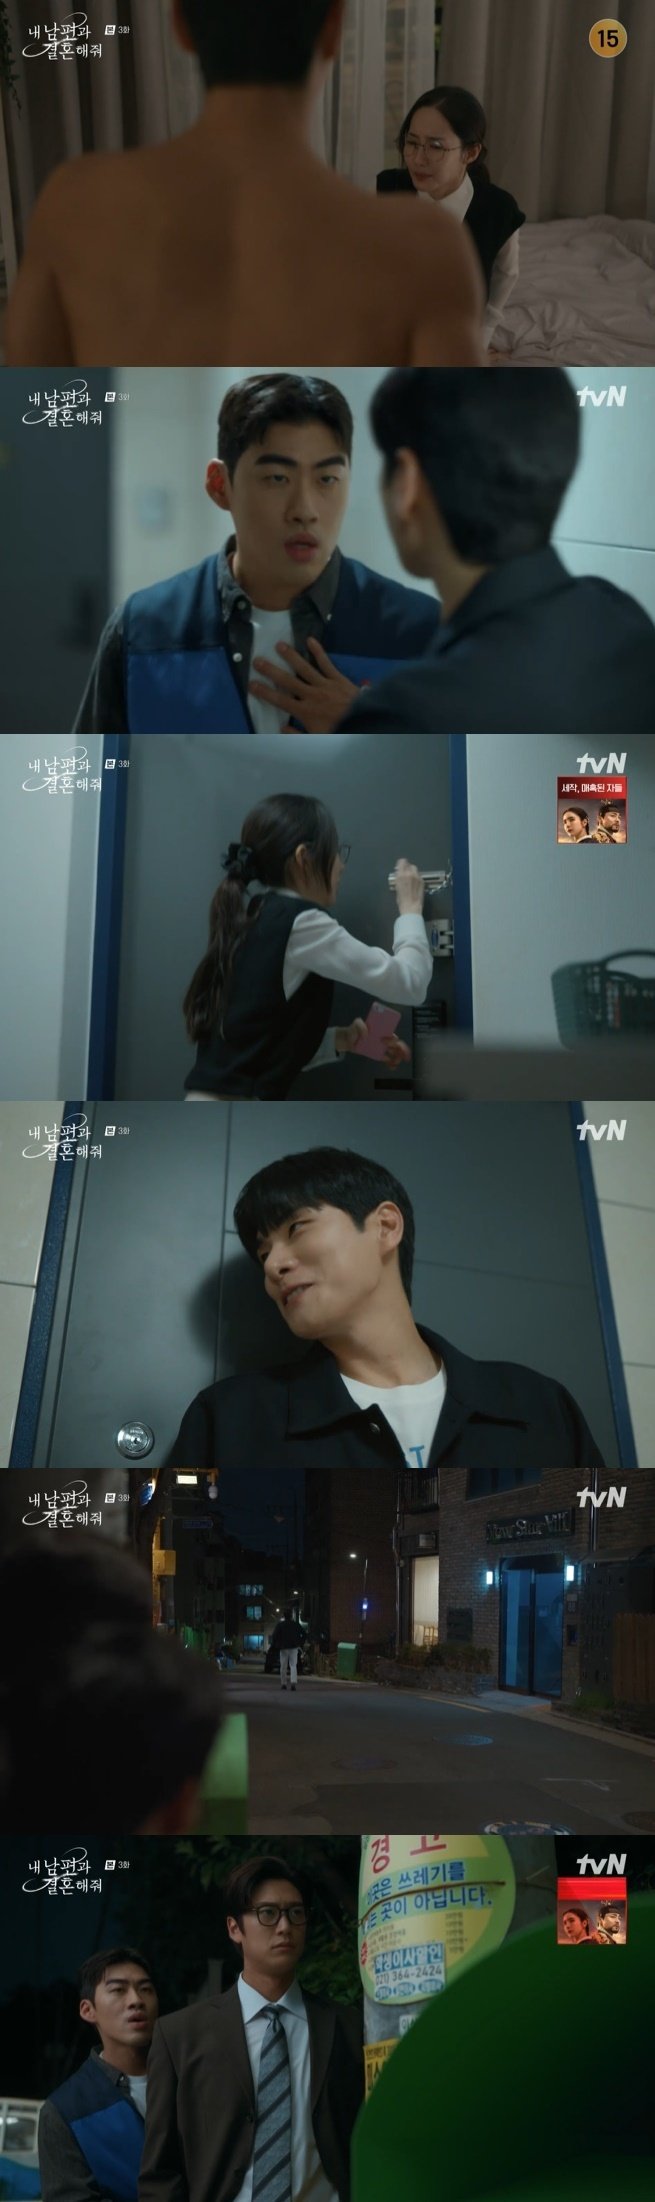 tvN '내 남편과 결혼해줘' 캡처